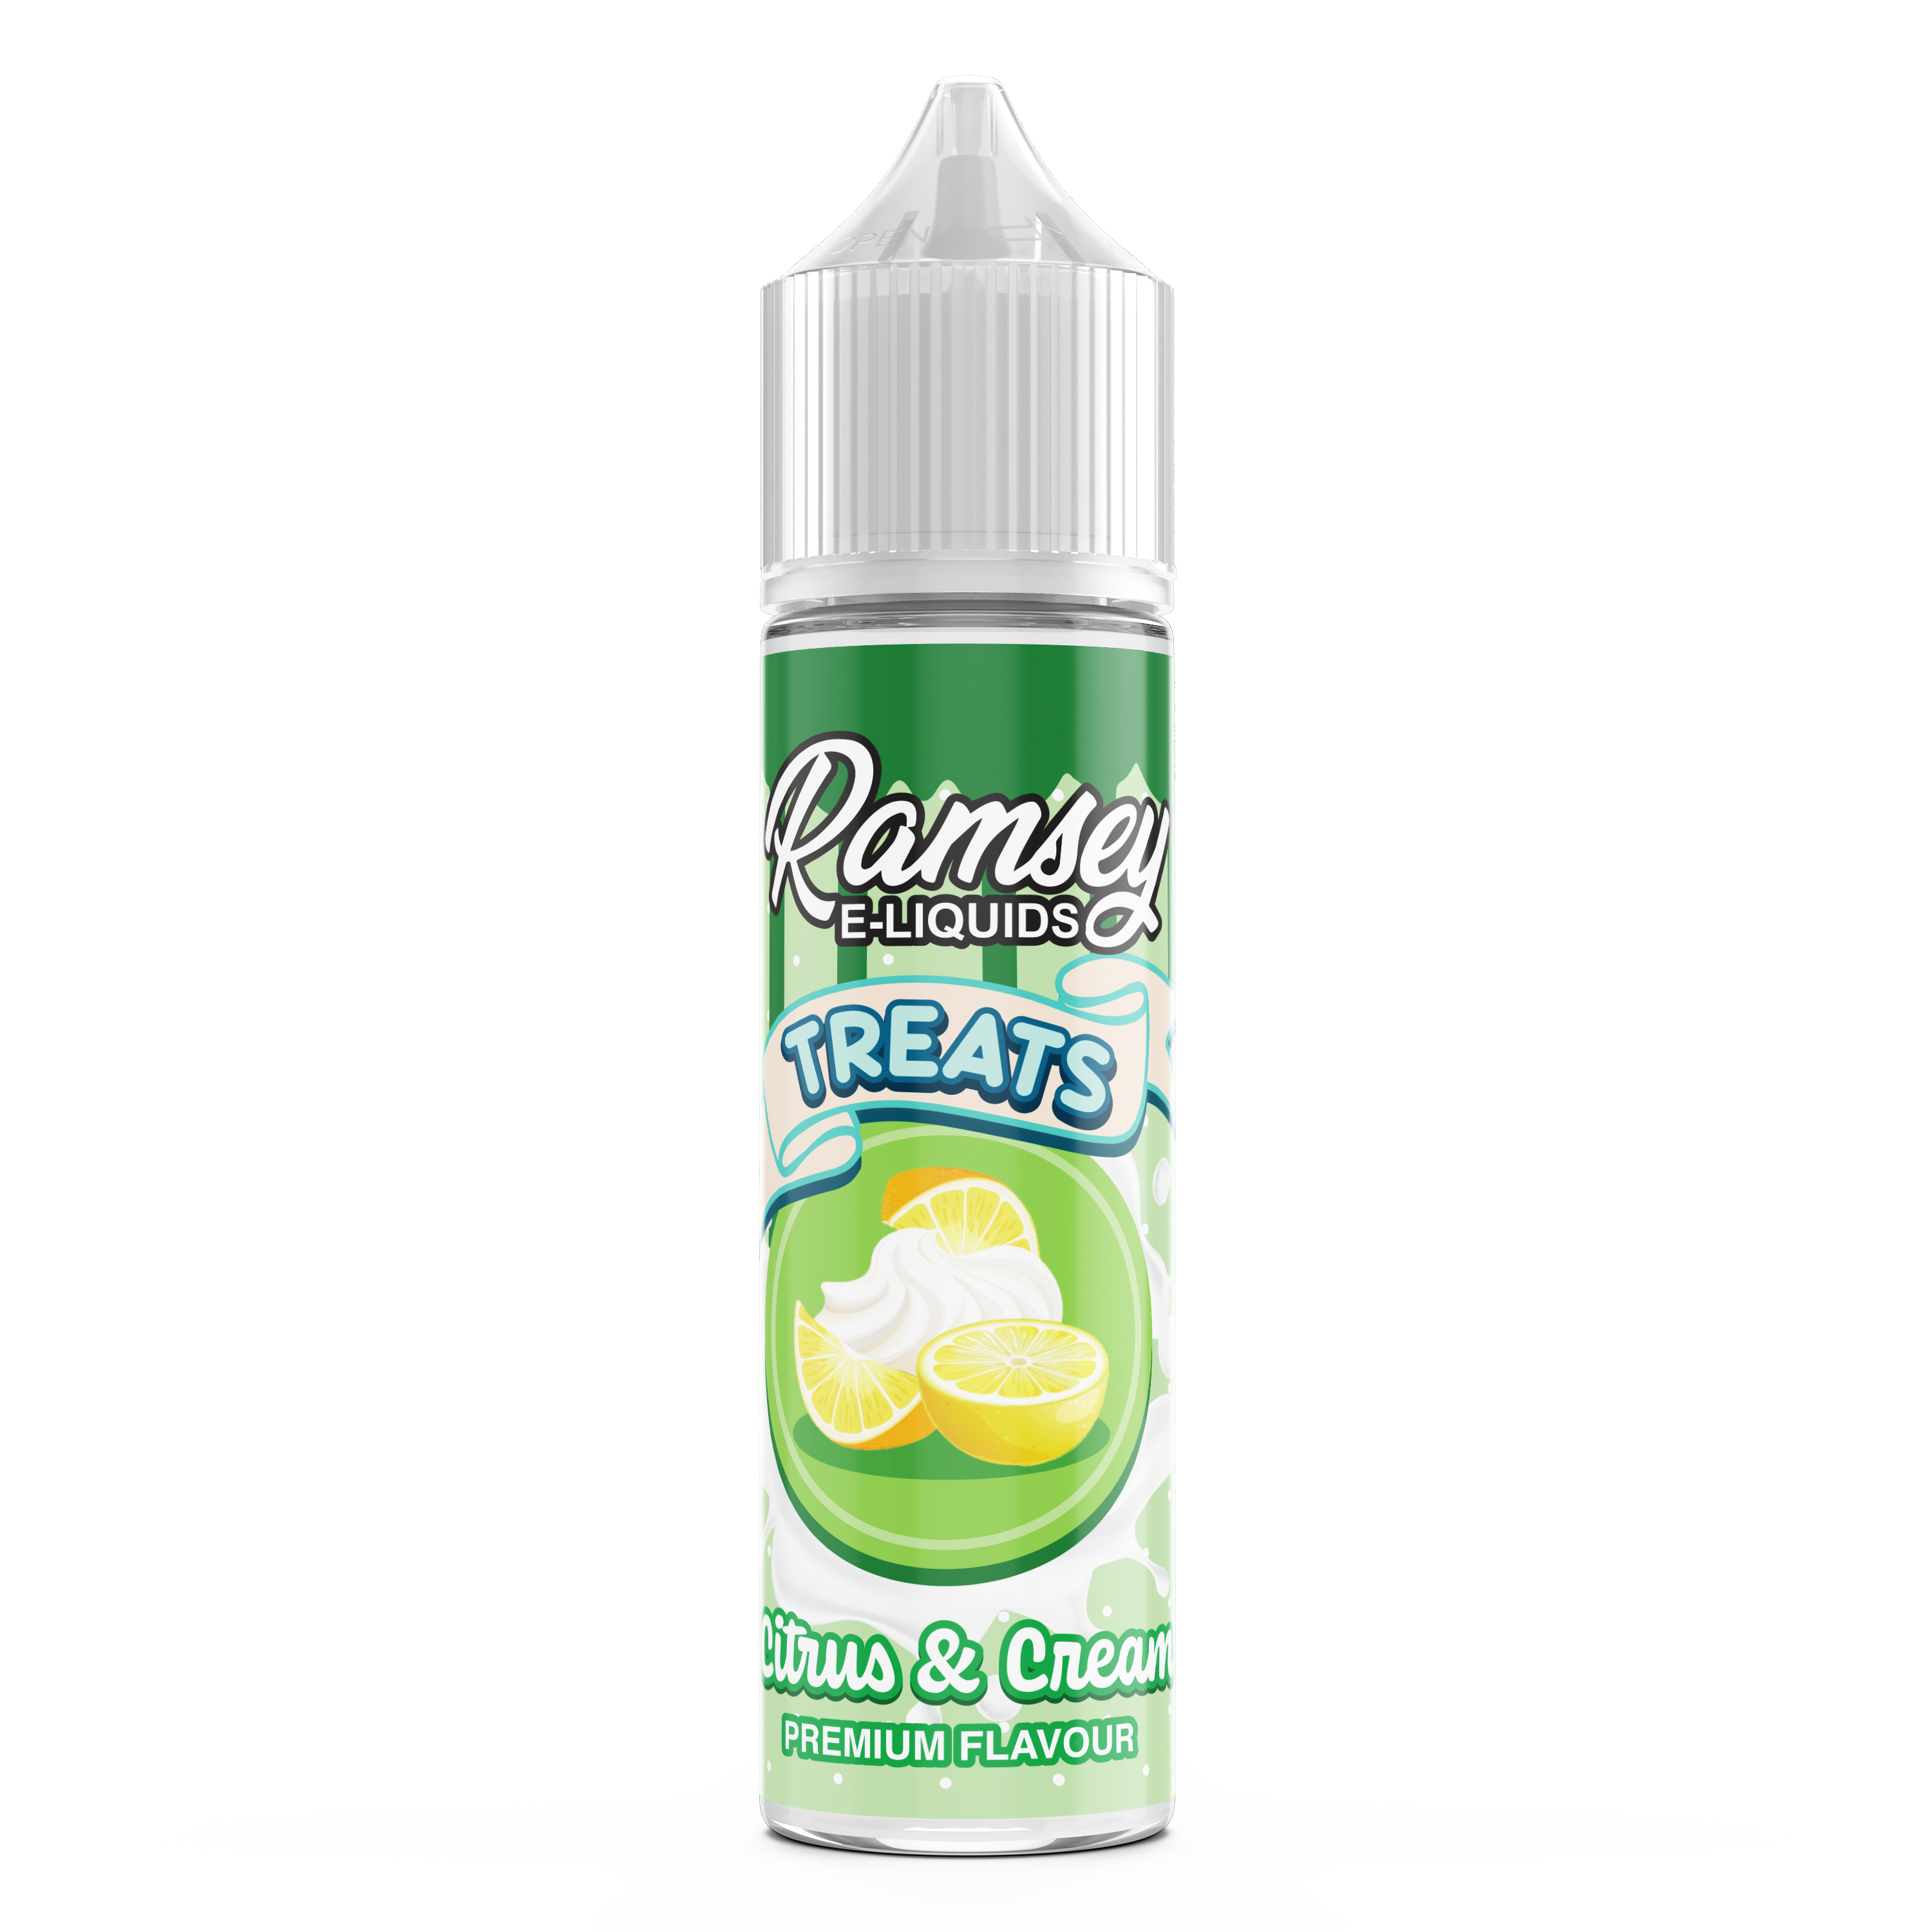 Ramsey E-Liquids Treats Citrus Cream 0mg 50ml Shortfill E-Liquid